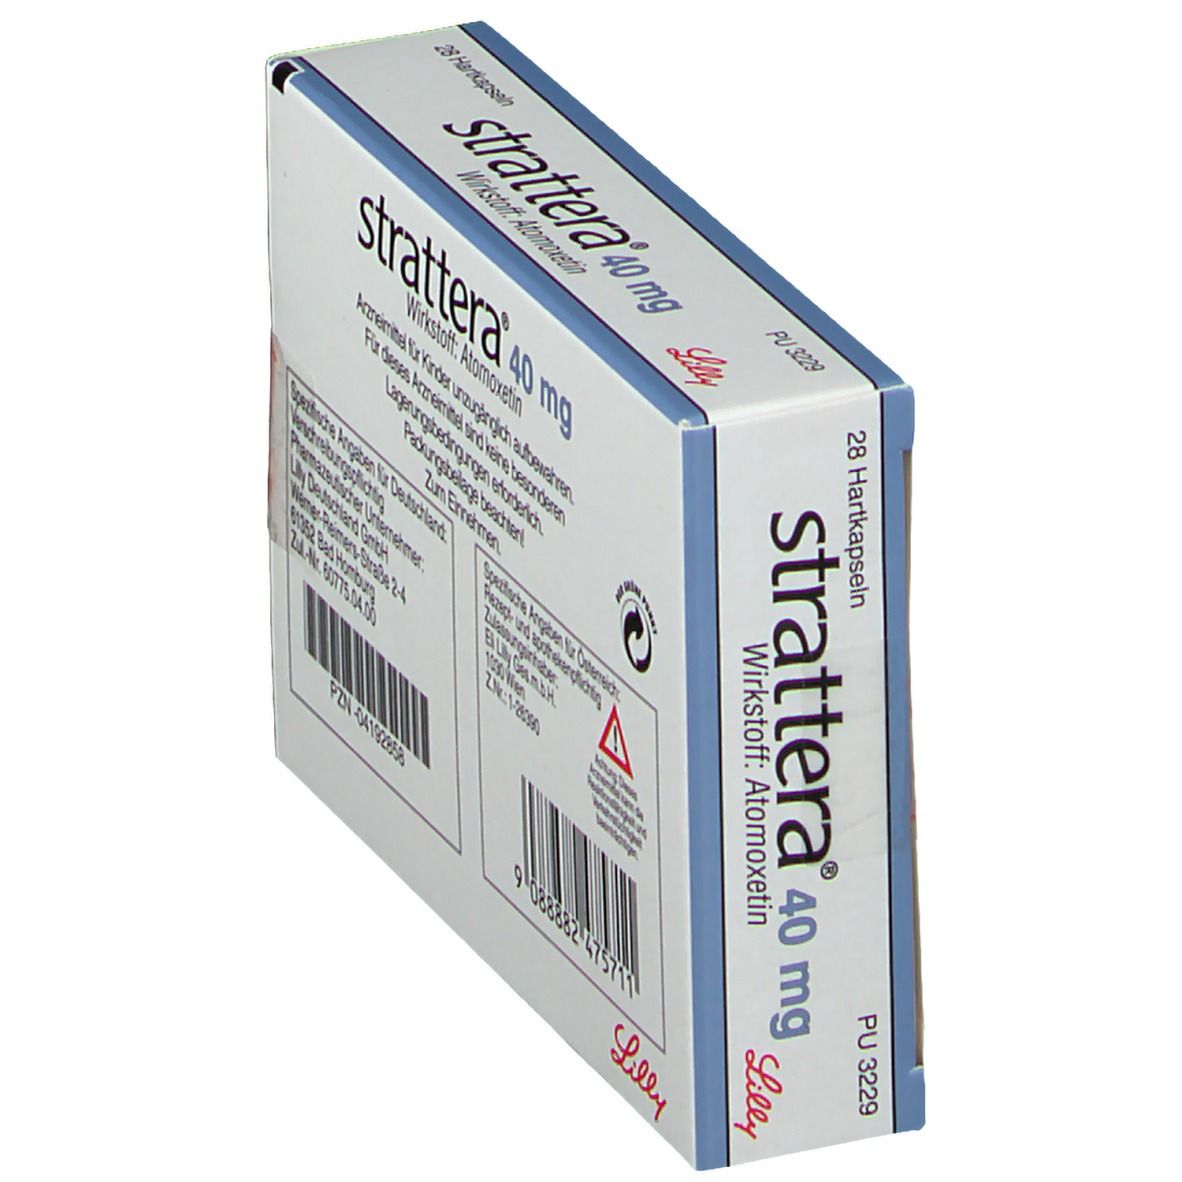 strattera® 40 mg